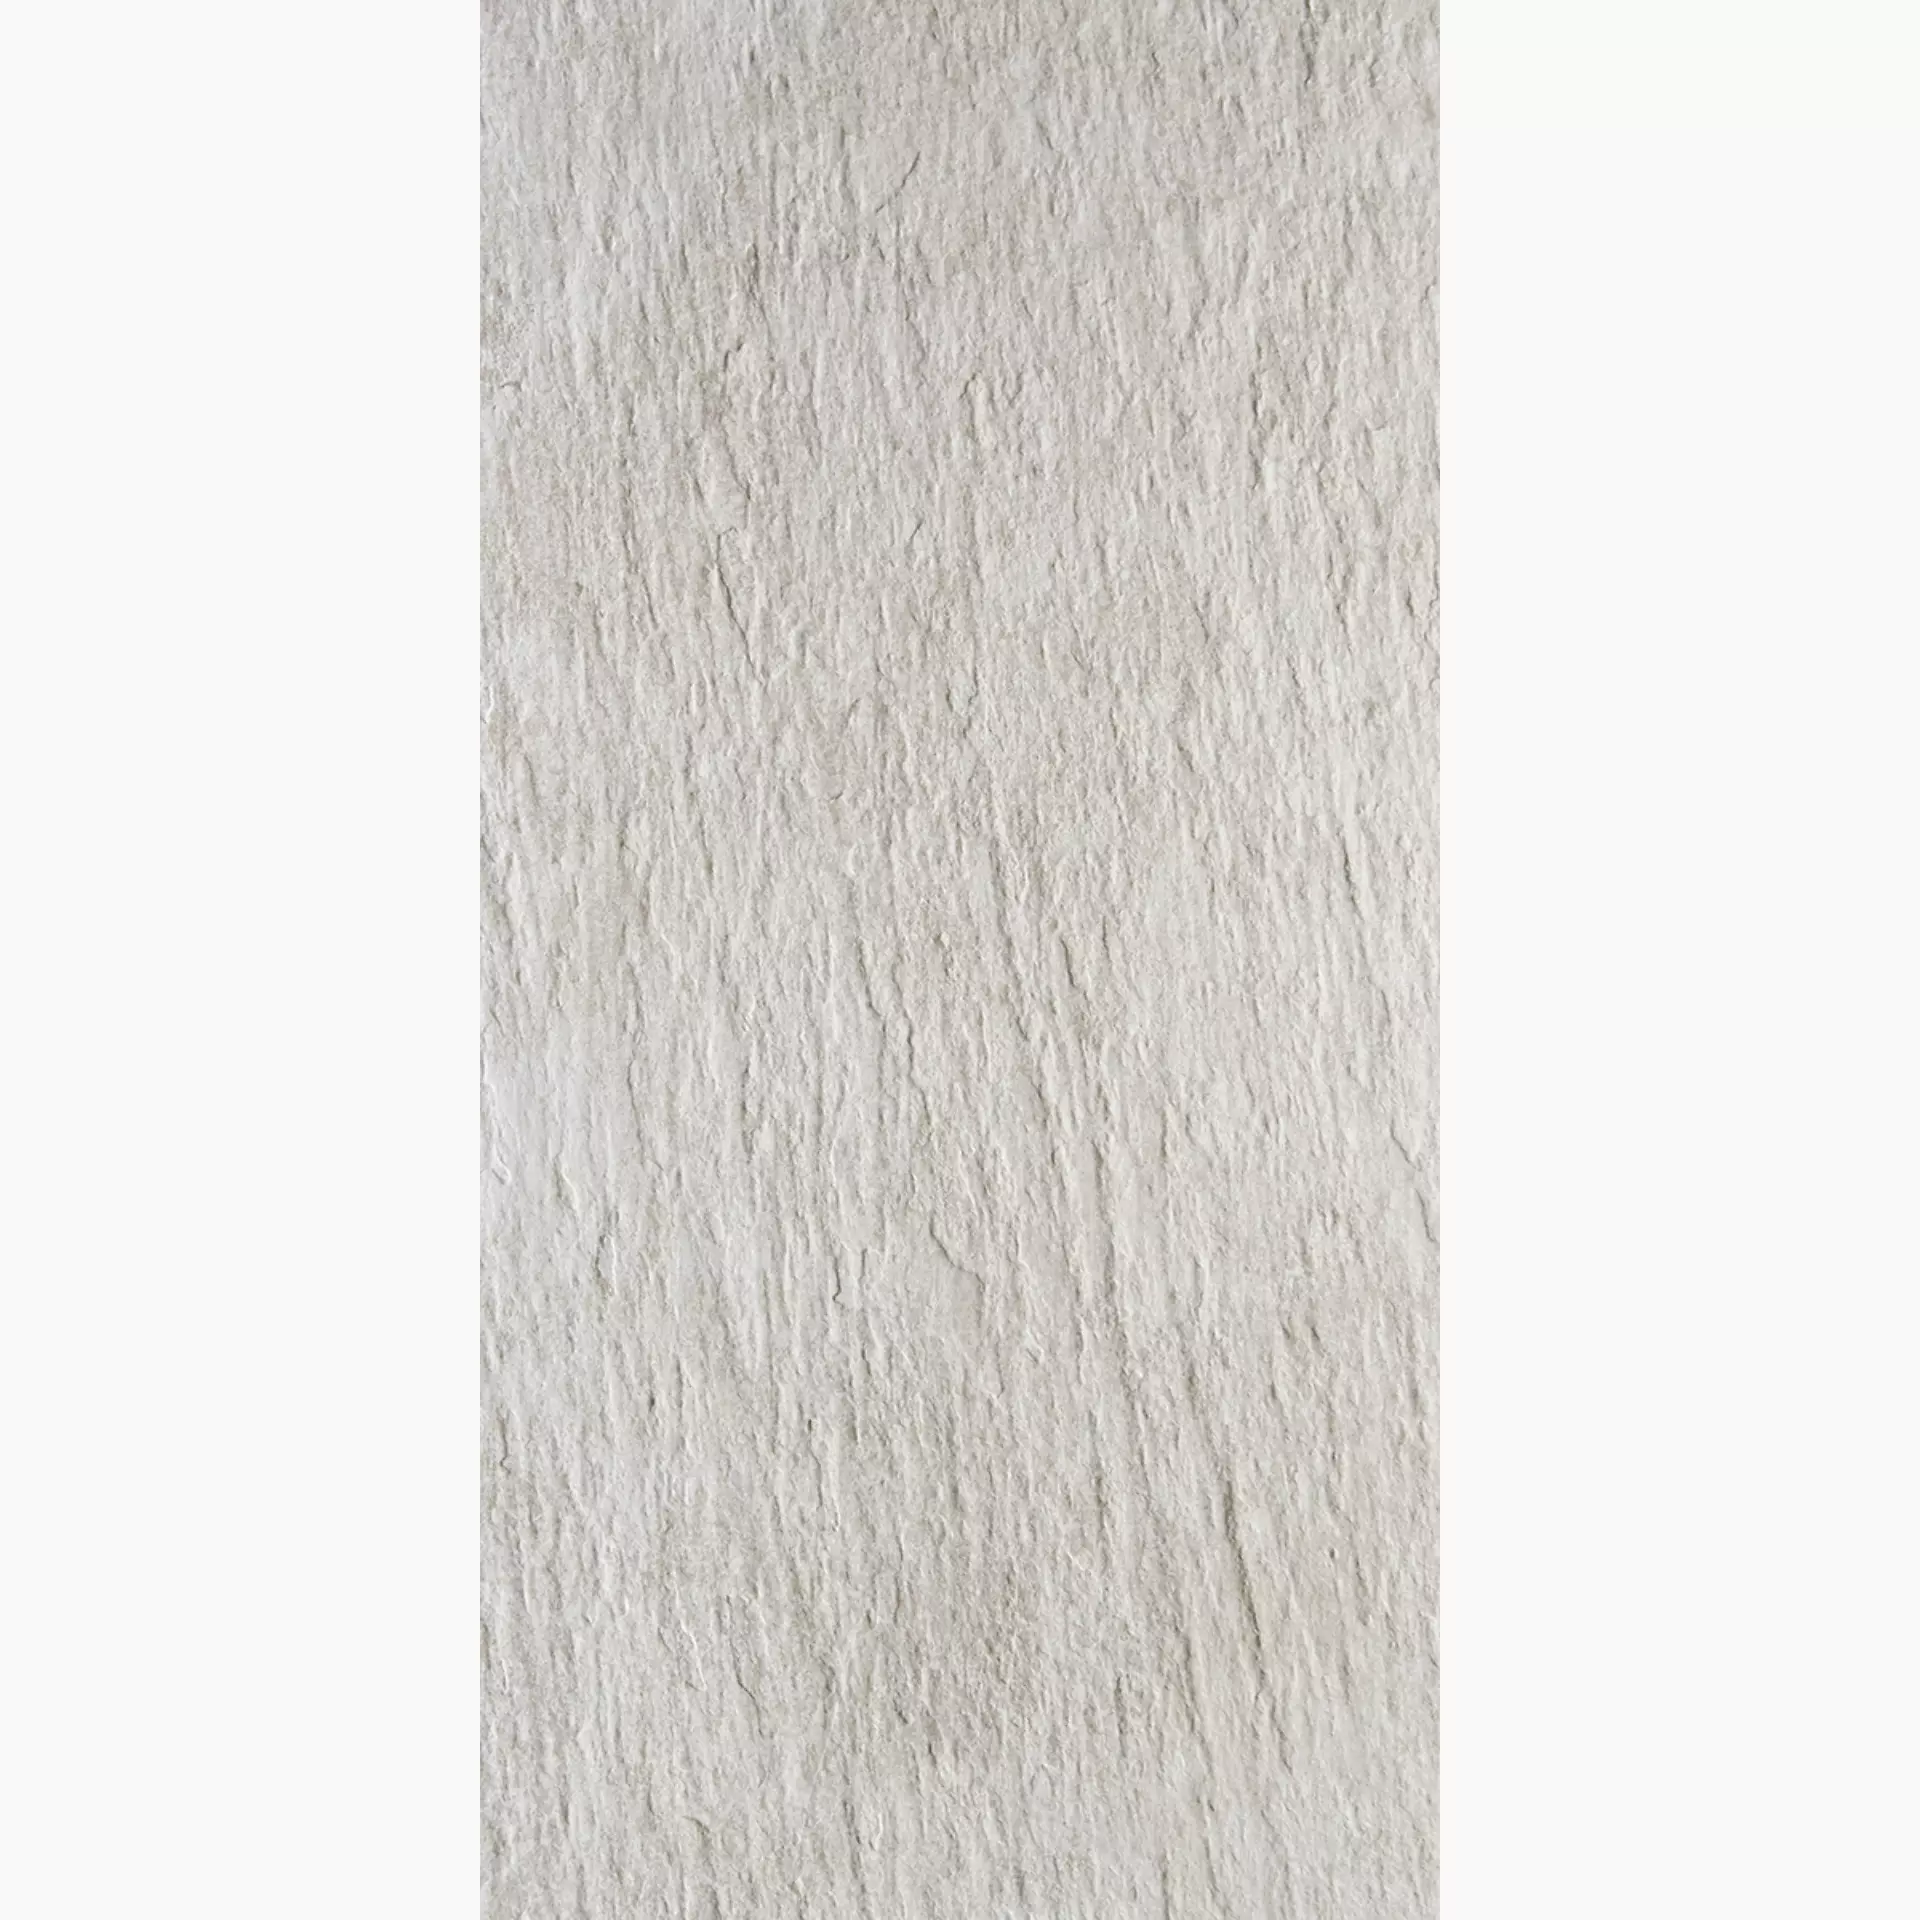 Rondine Ardesie White Strong J87134 30,5x60,5cm 8,5mm